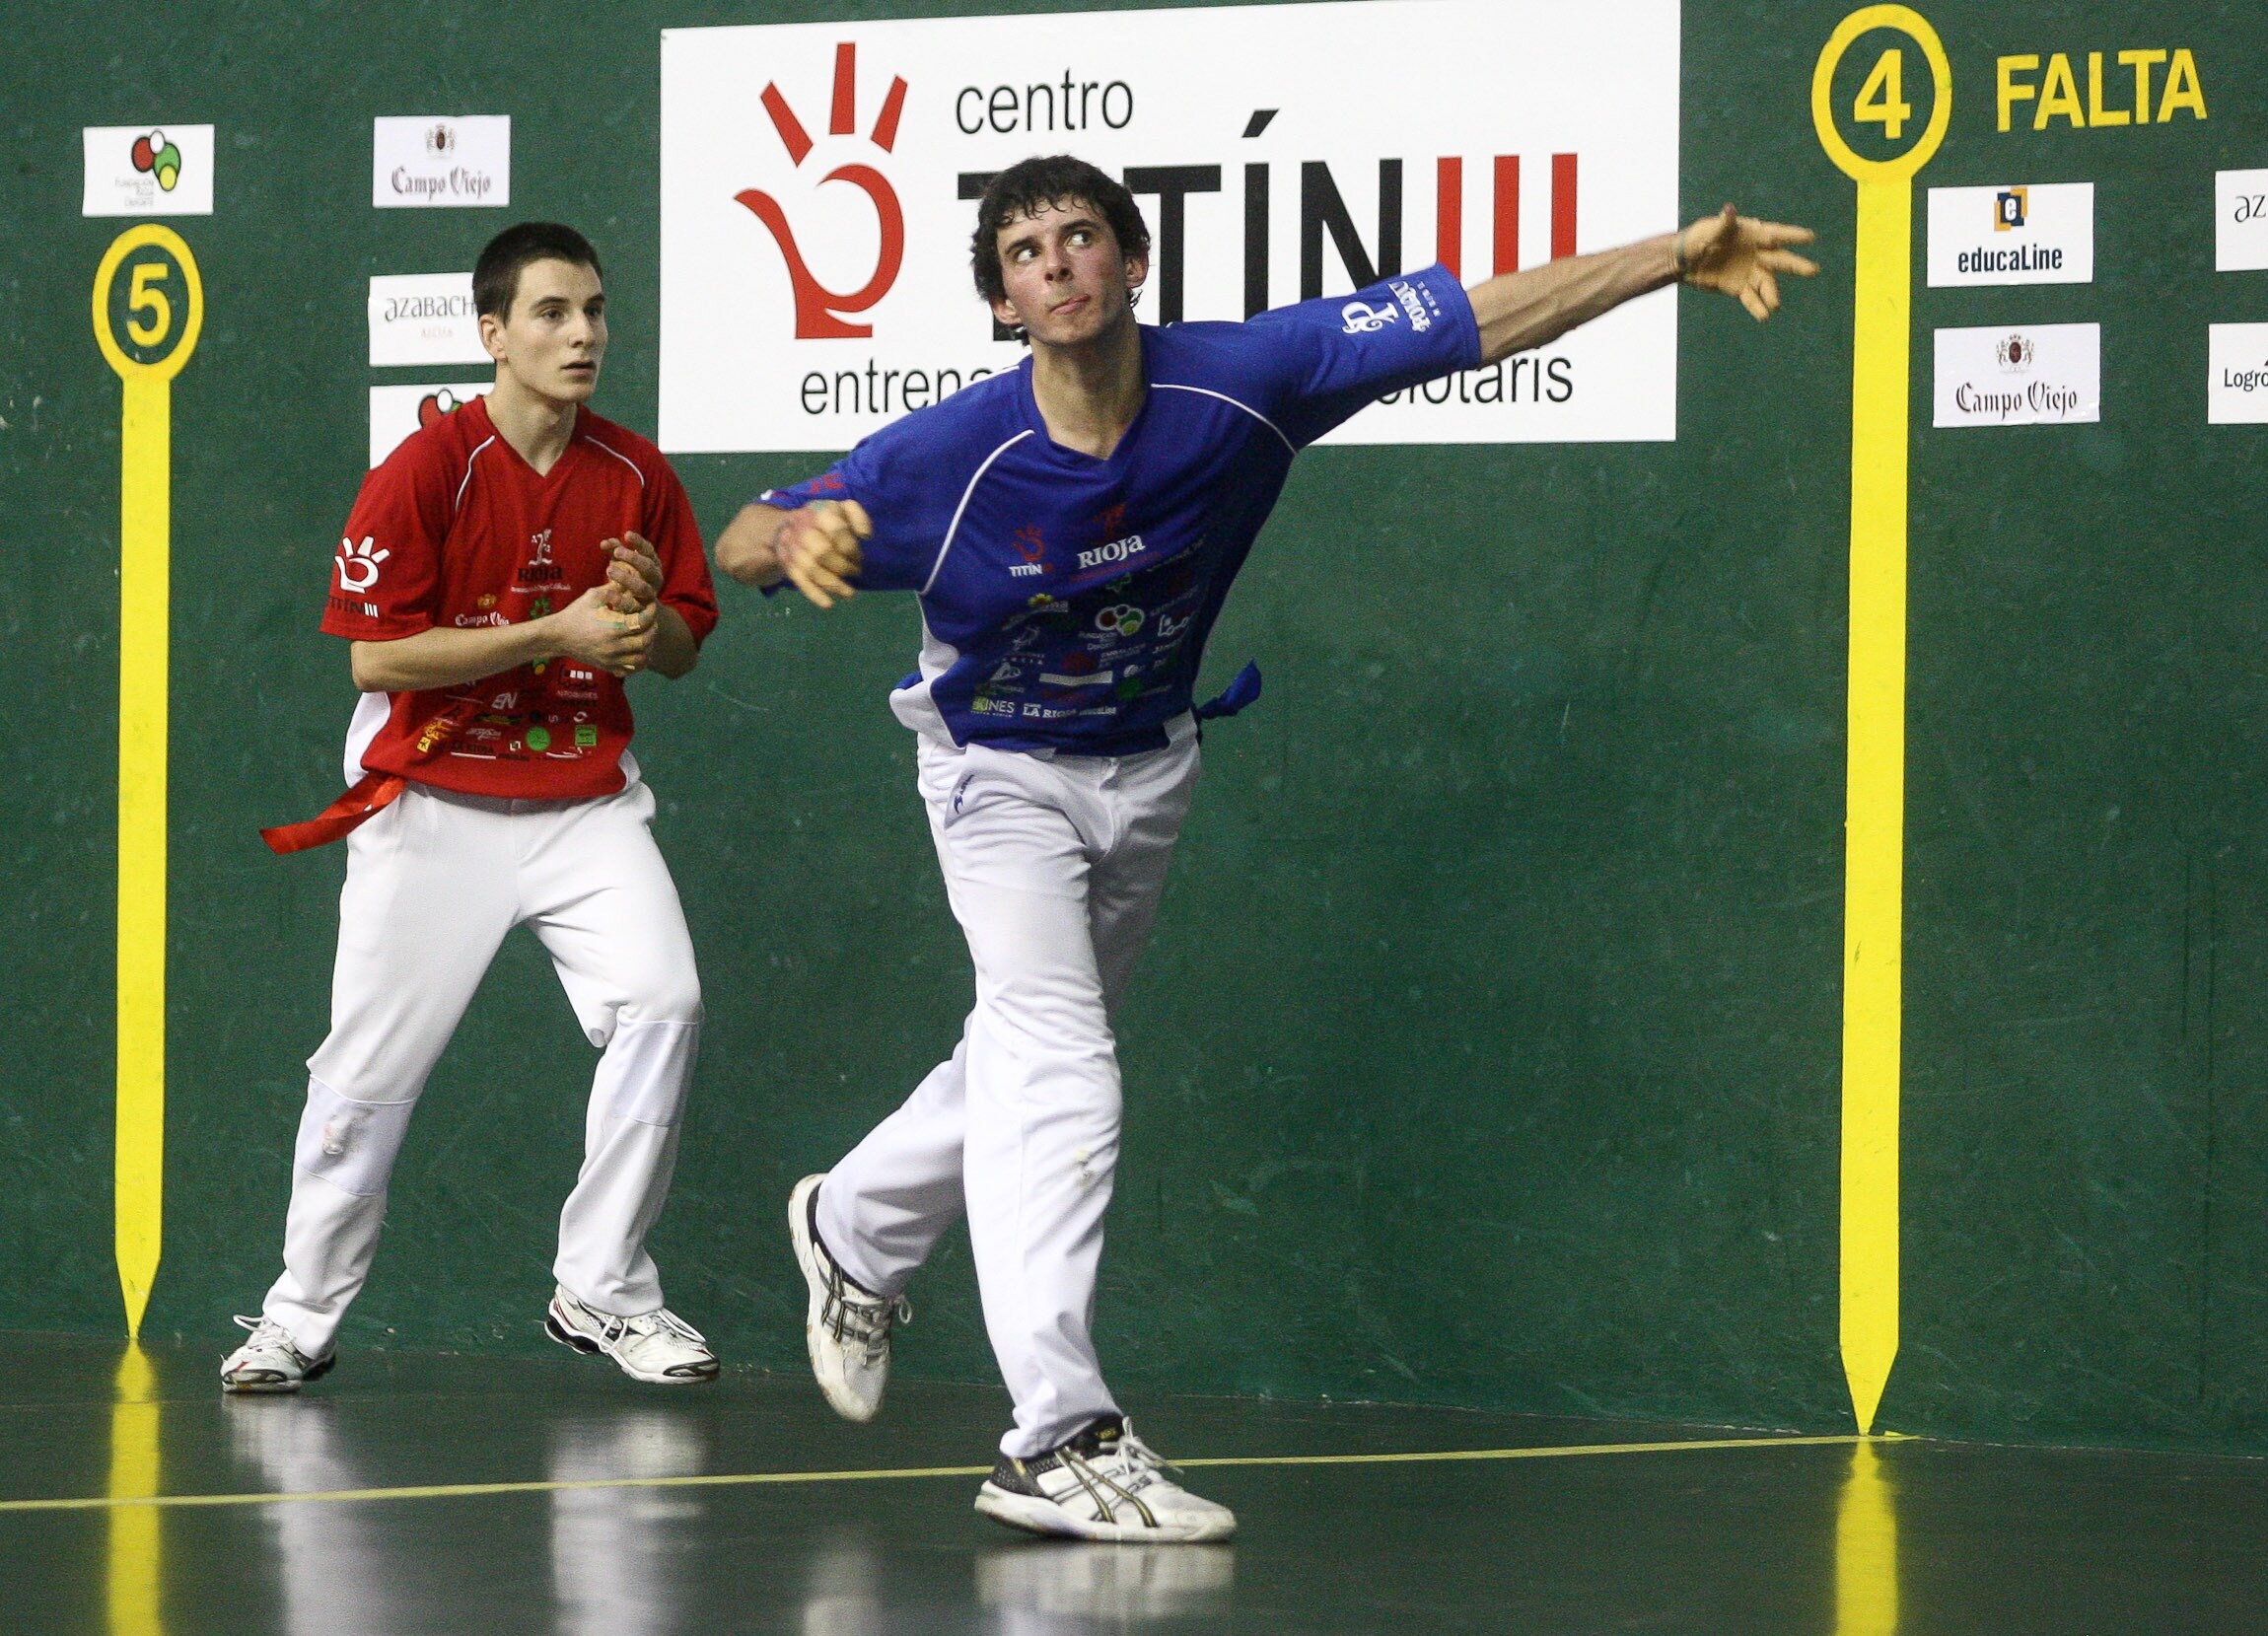 Altuna e Ibarrondo contra Irribarría e Imaz en partido del VI Torneo de Pelota Gobierno de La Rioja.